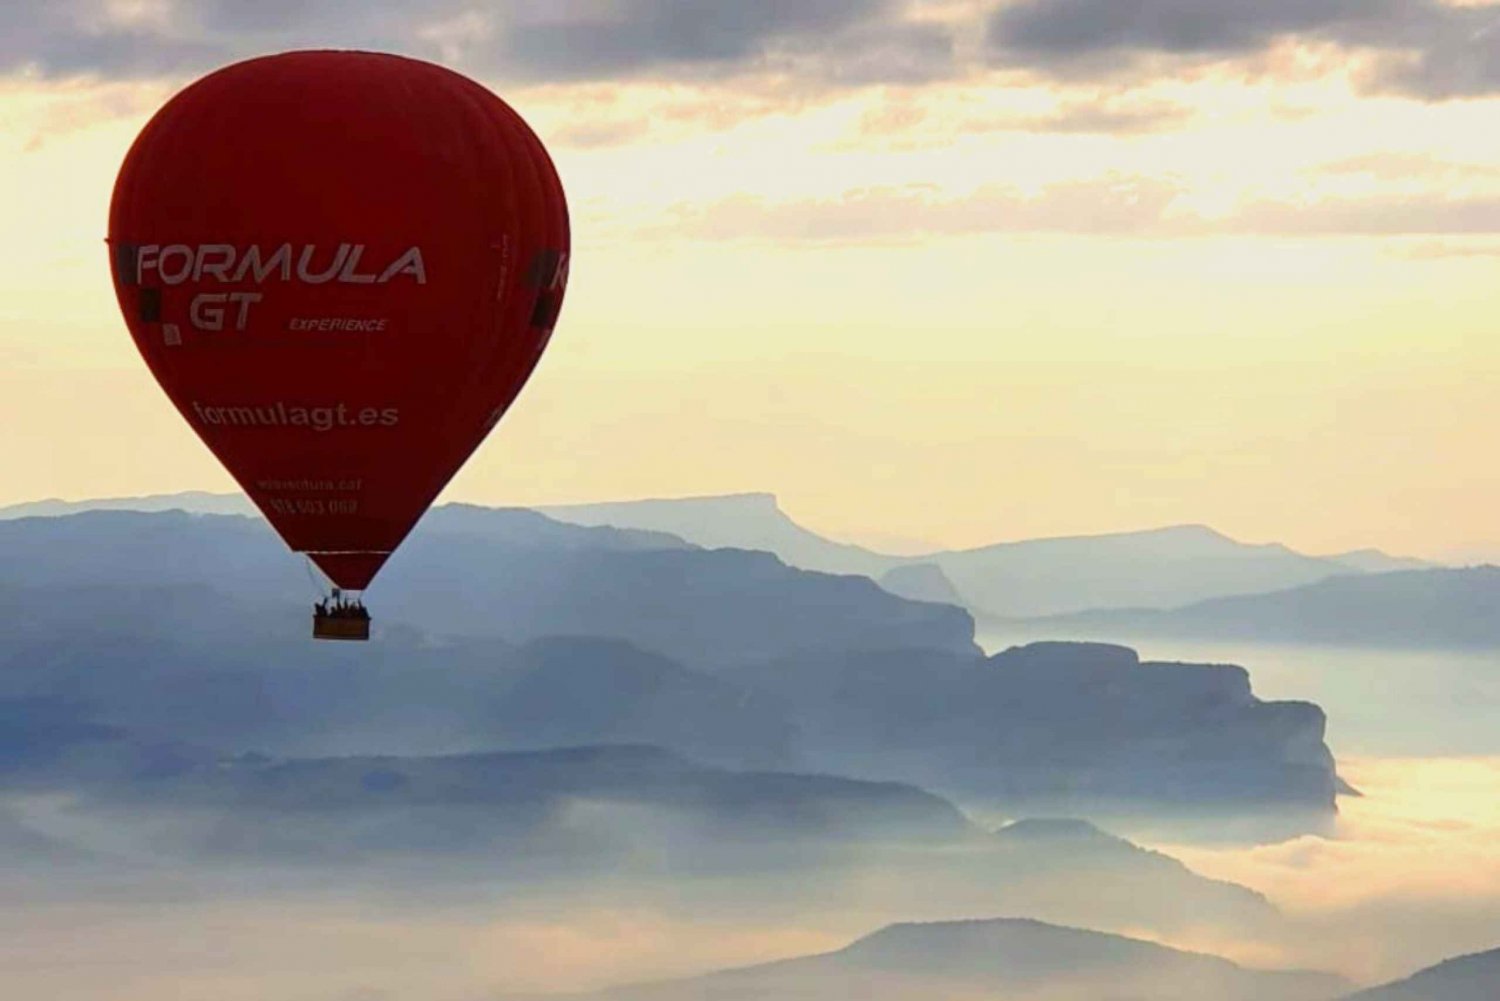 Barcelona: romantische privéballonvlucht